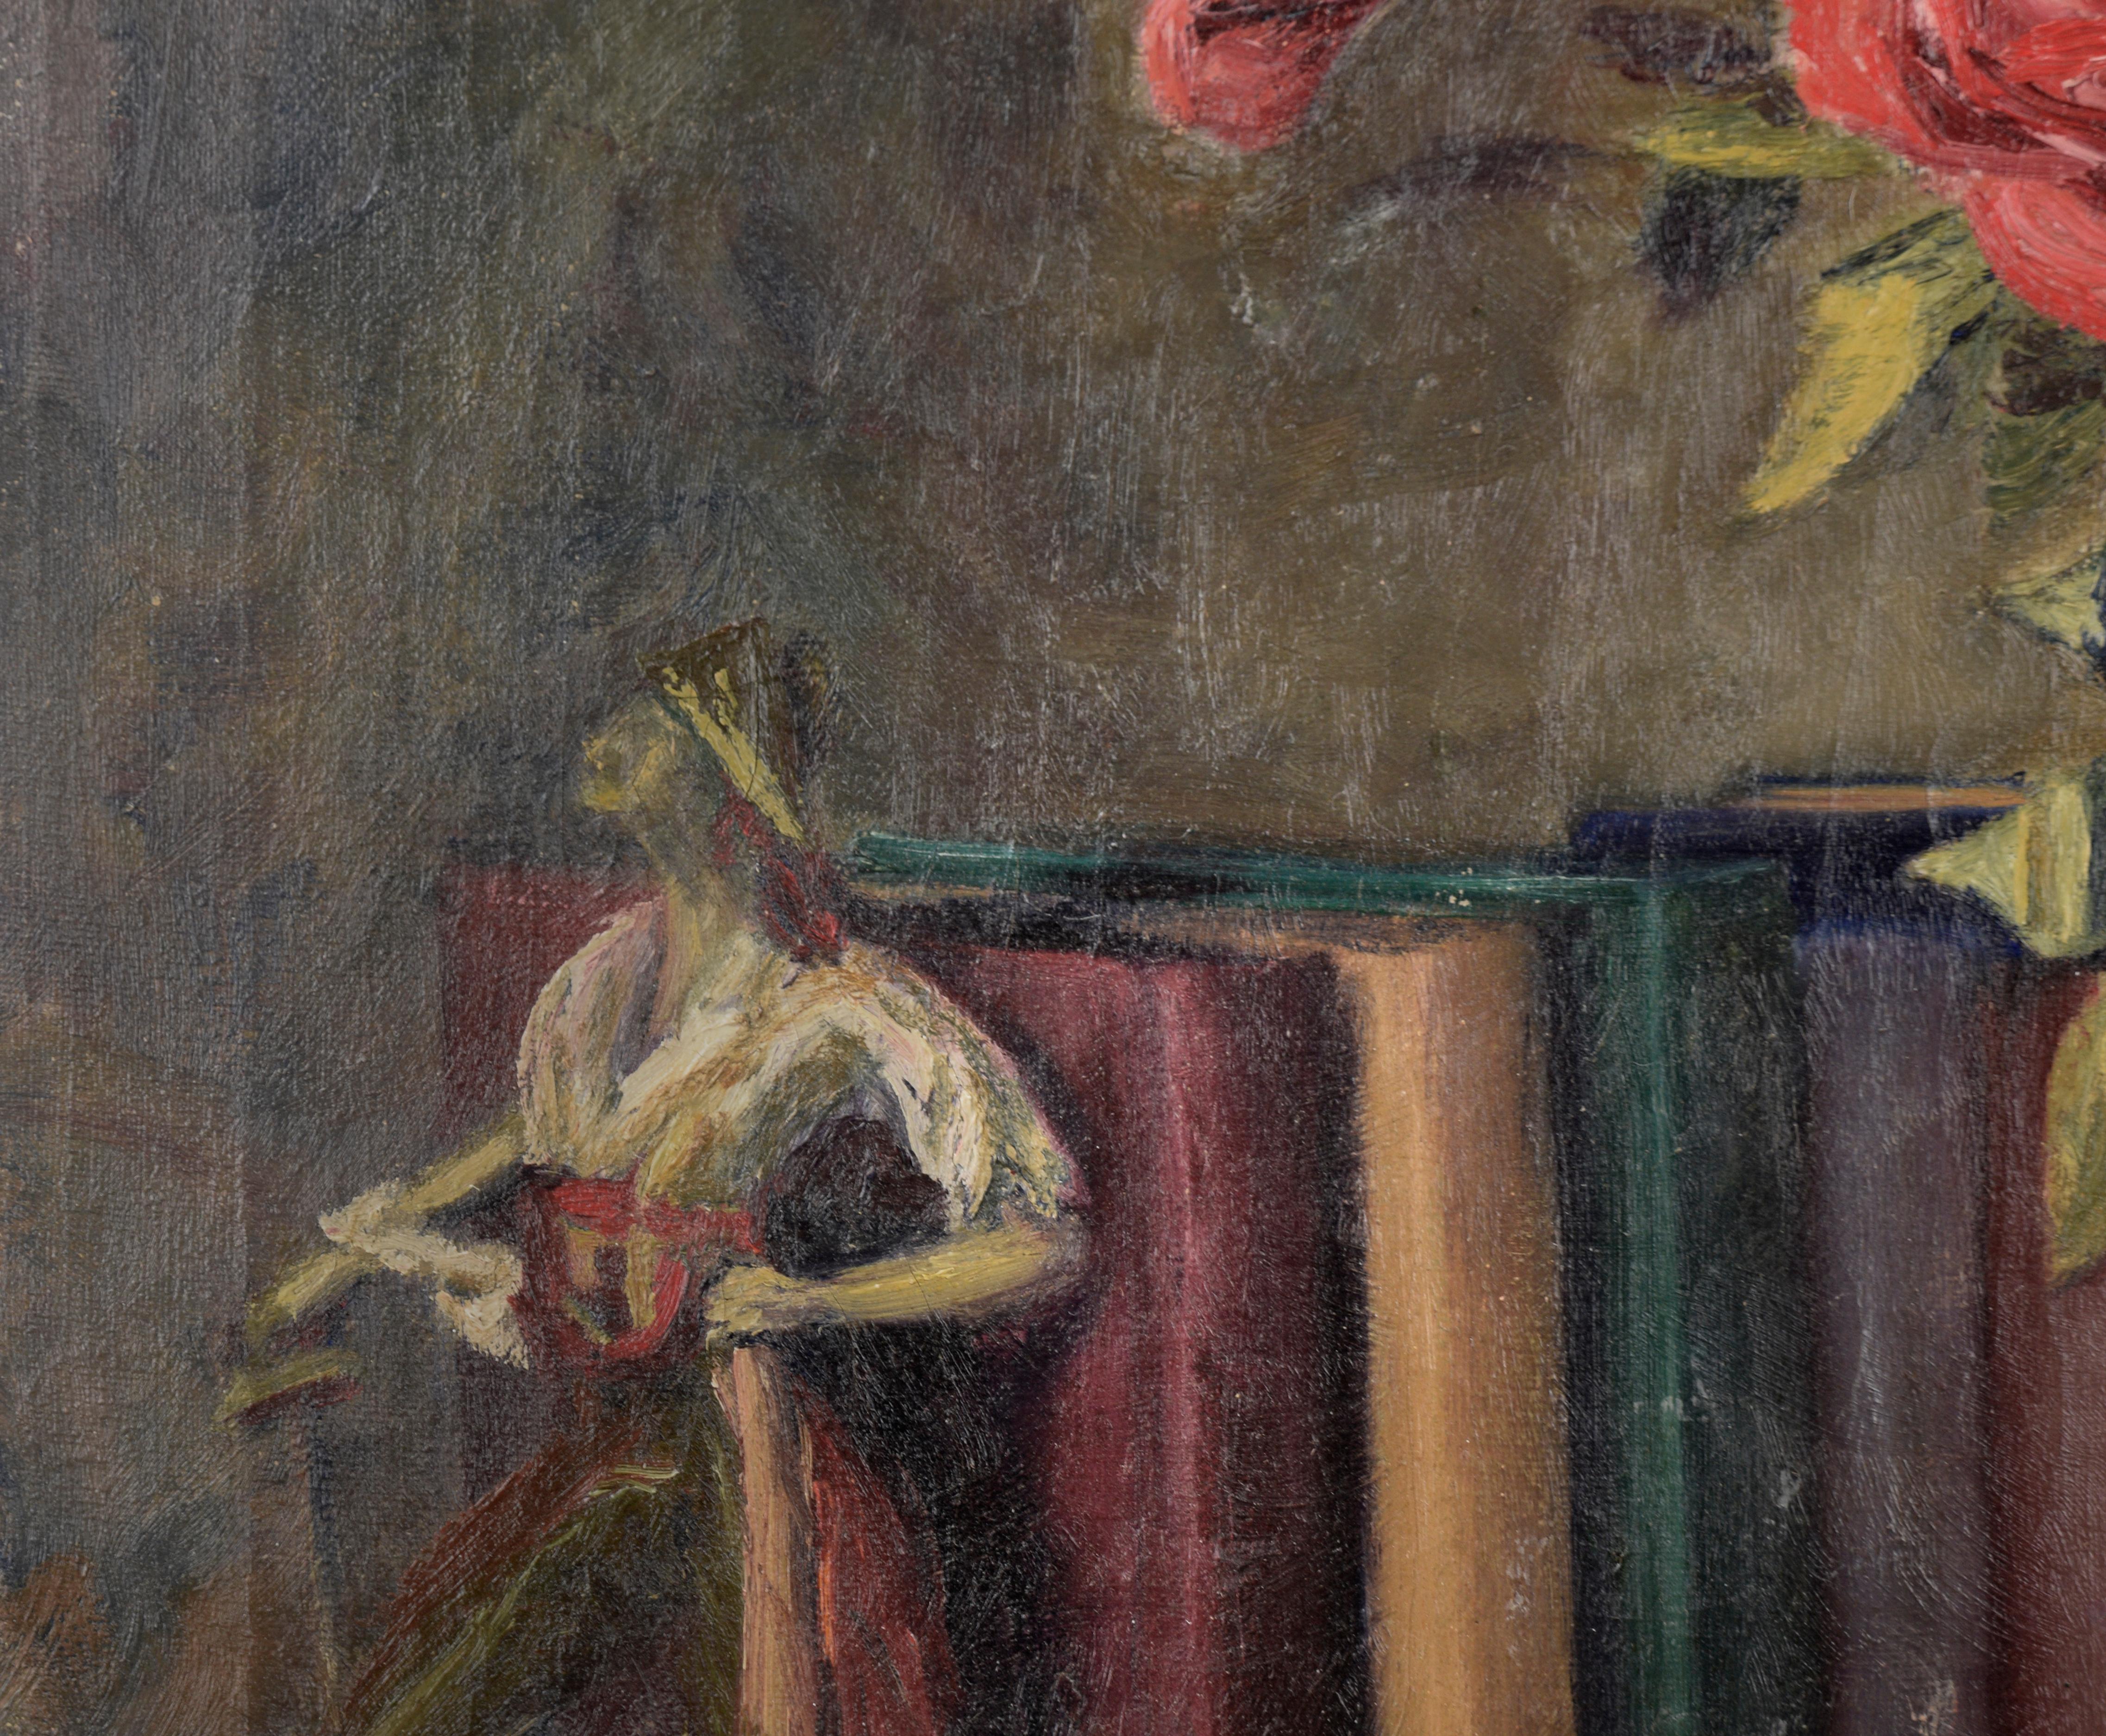 Nature morte détaillée de roses, de livres, d'une statue des Pirates de Penzance et d'un cendrier par l'artiste texane Willa (Willie) Kay Fall (1891-1976). Signé dans le coin inférieur droit. Présenté dans son cadre d'origine en bois doré. 
 Image